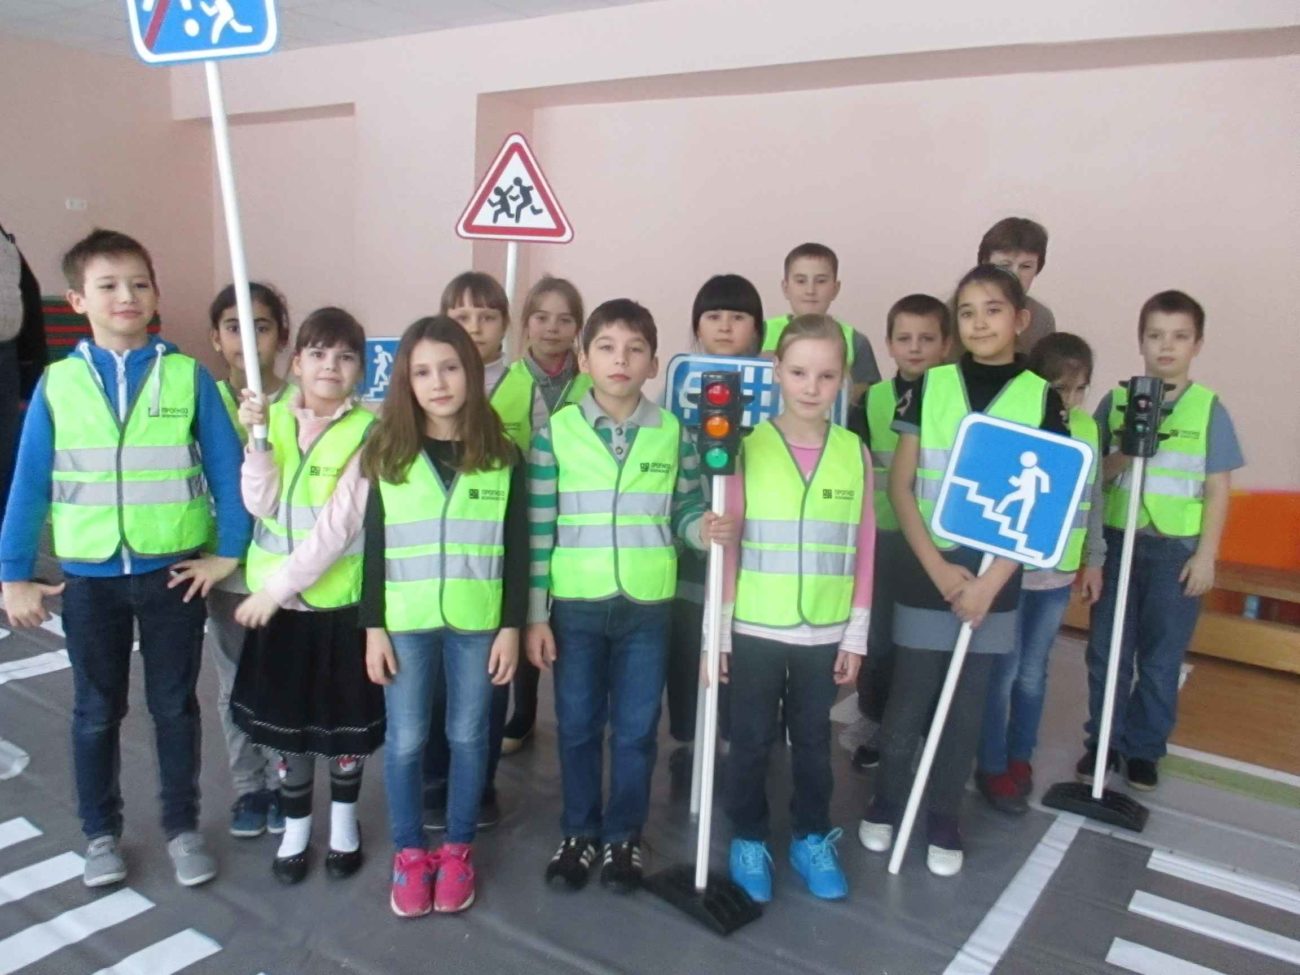 Республиканский слет-конкурс отрядов юных инспекторов движения пройдет в Бобруйске